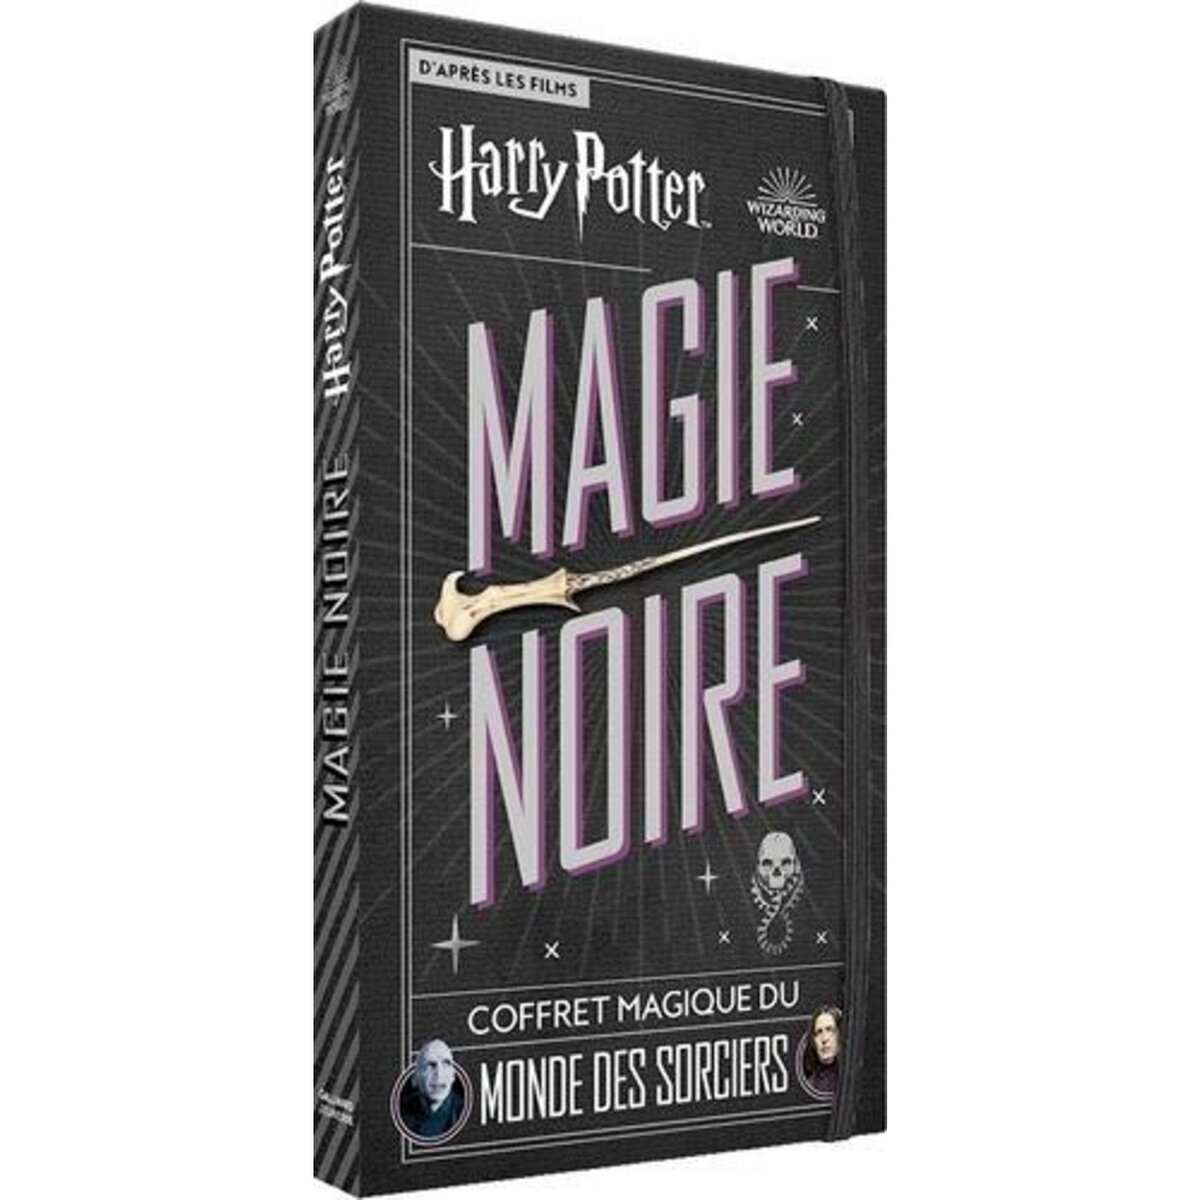 Harry potter magie noire coffret magique du monde des sorciers